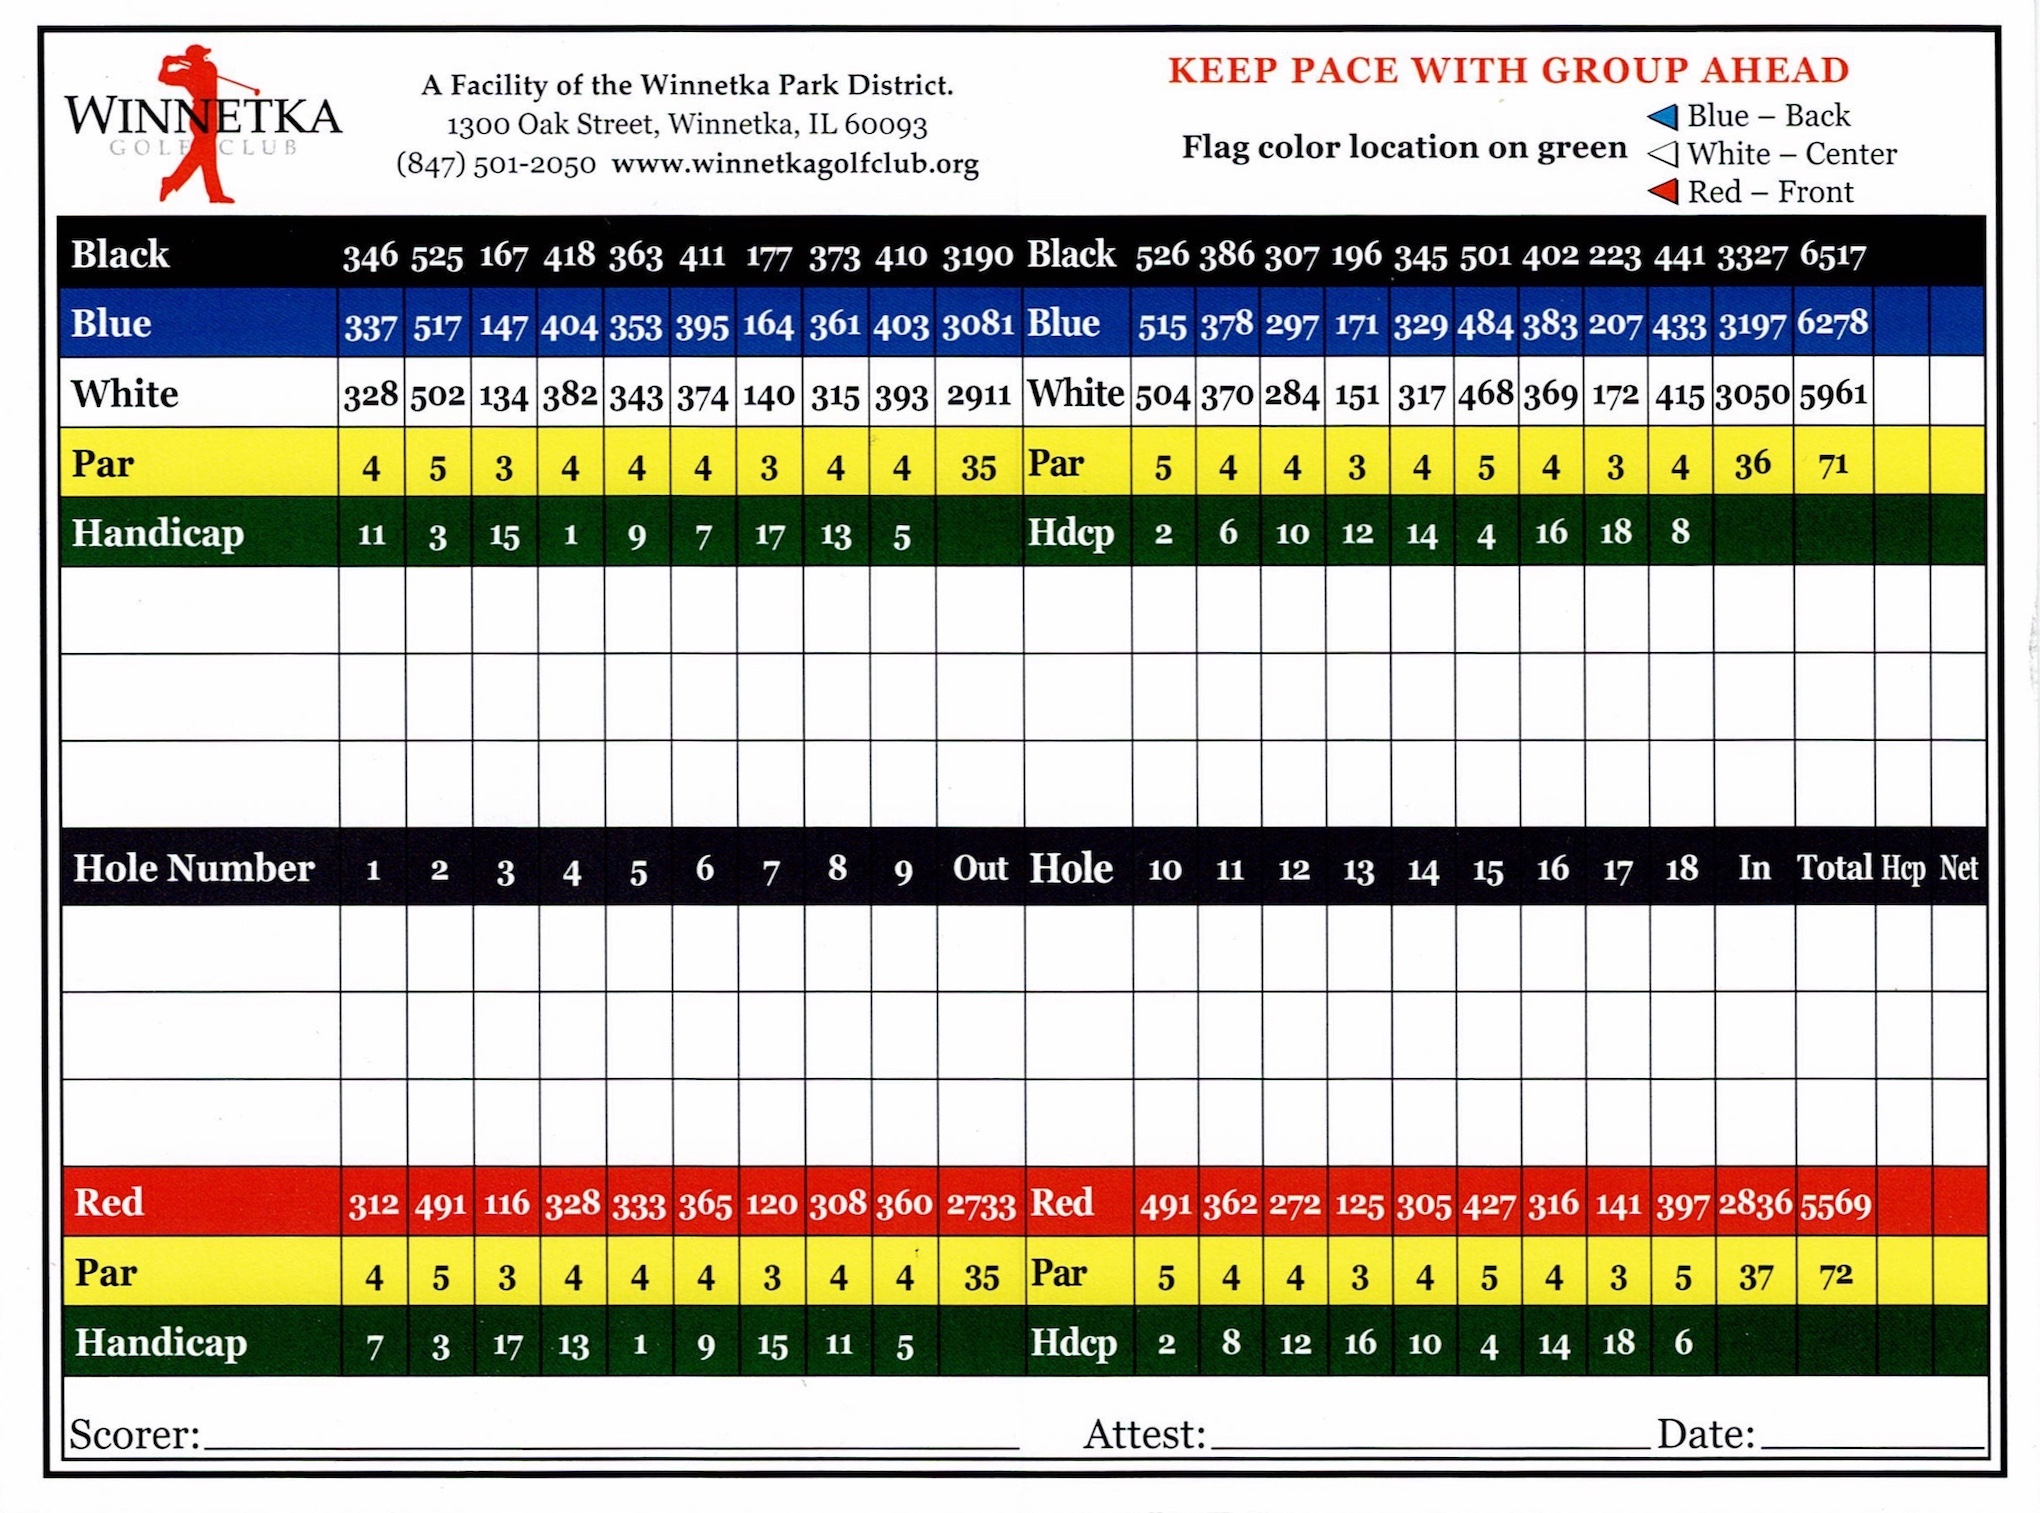 Scan of the scorecard from Winnetka Golf Club in Winnetka, Illinois. 